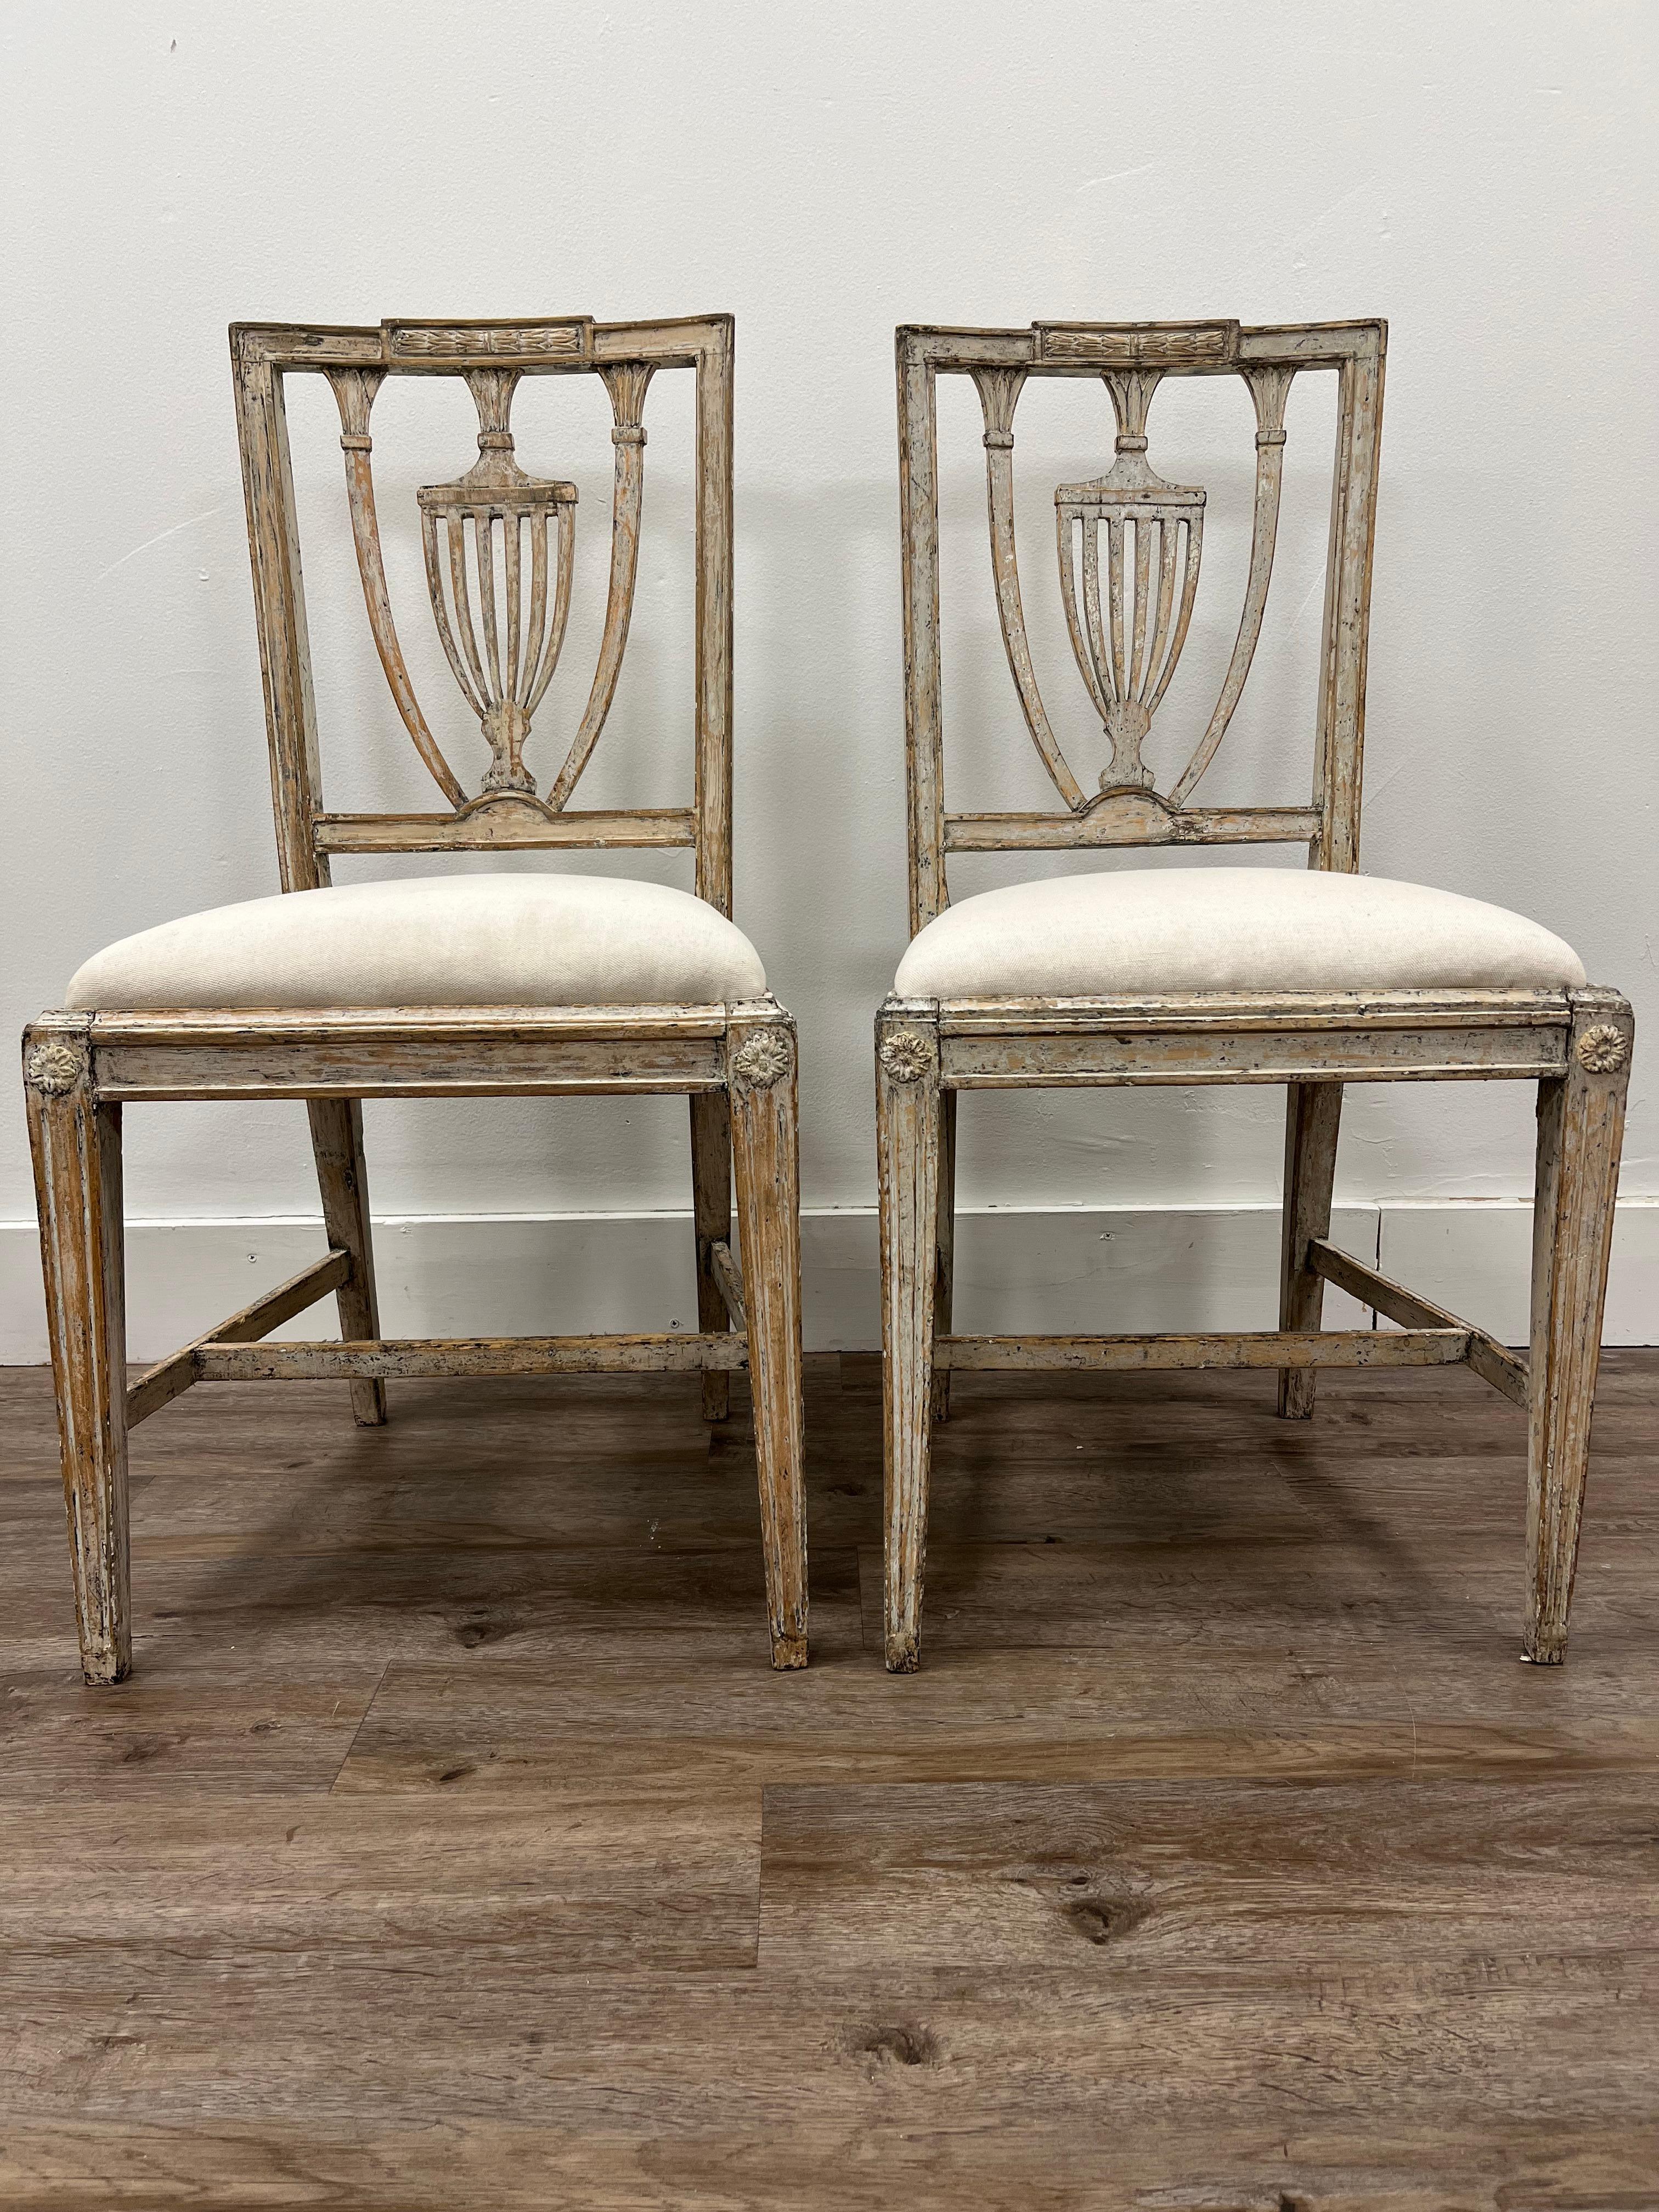 Ein Paar schwedischer gustavianischer Stühle, hergestellt in Stockholm von Meister Melker Falkberg (1746 - 1822). Gestempelt mit dem Siegel des Stockholmer Stuhlmachers und der Signatur des Herstellers. Sie wurden bis zu ihrer ursprünglichen